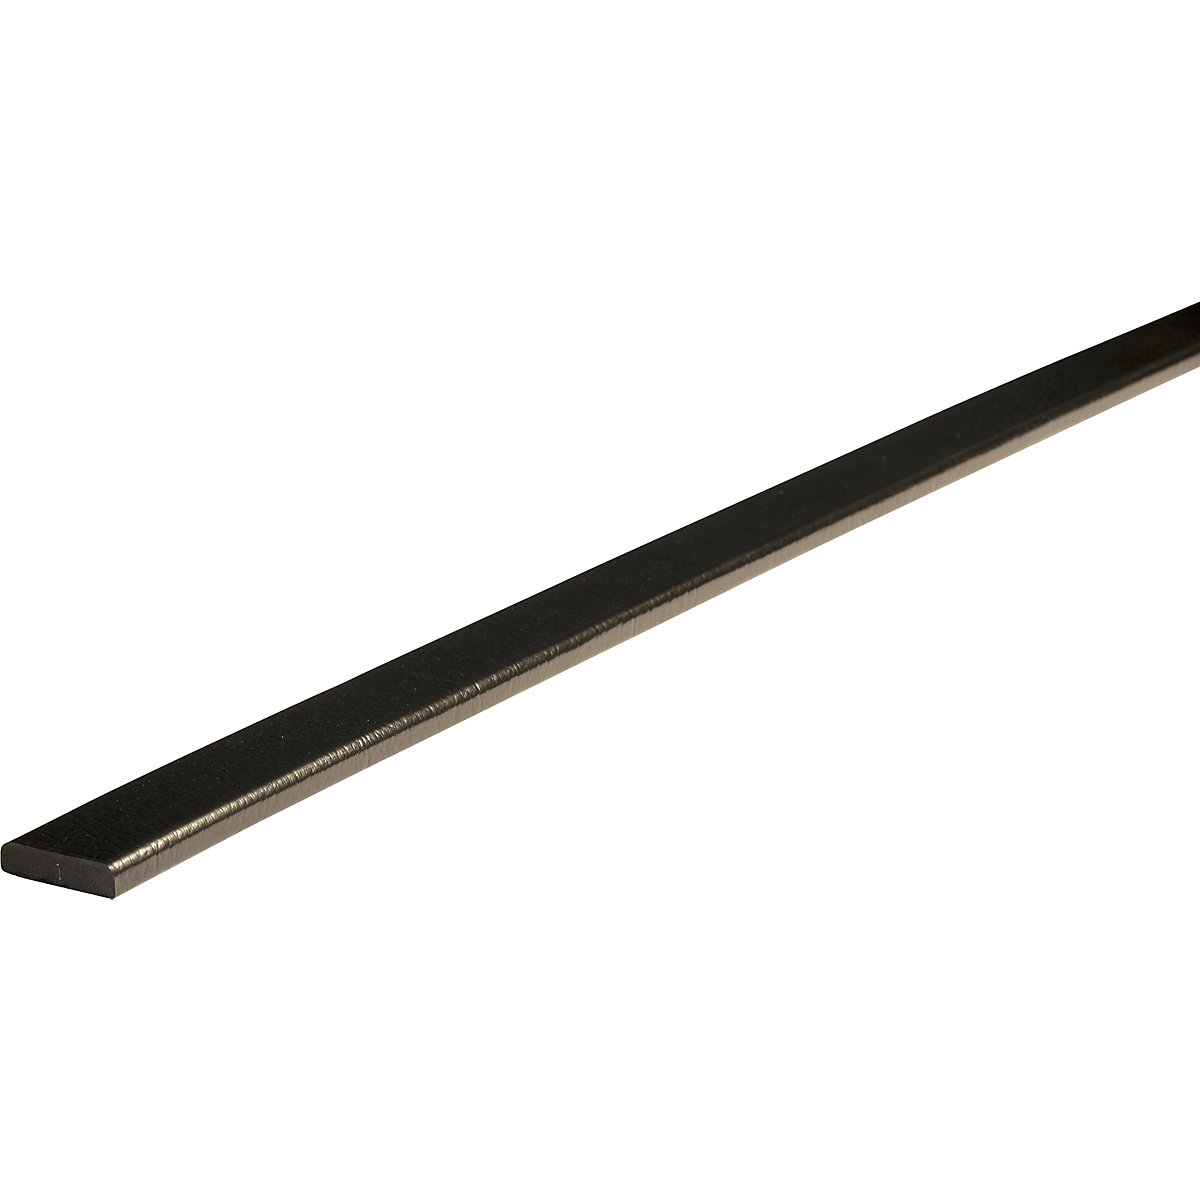 Knuffi®-oppervlaktebescherming – SHG, type F, herbruikbaar, stuk van 1 m, zwart-19